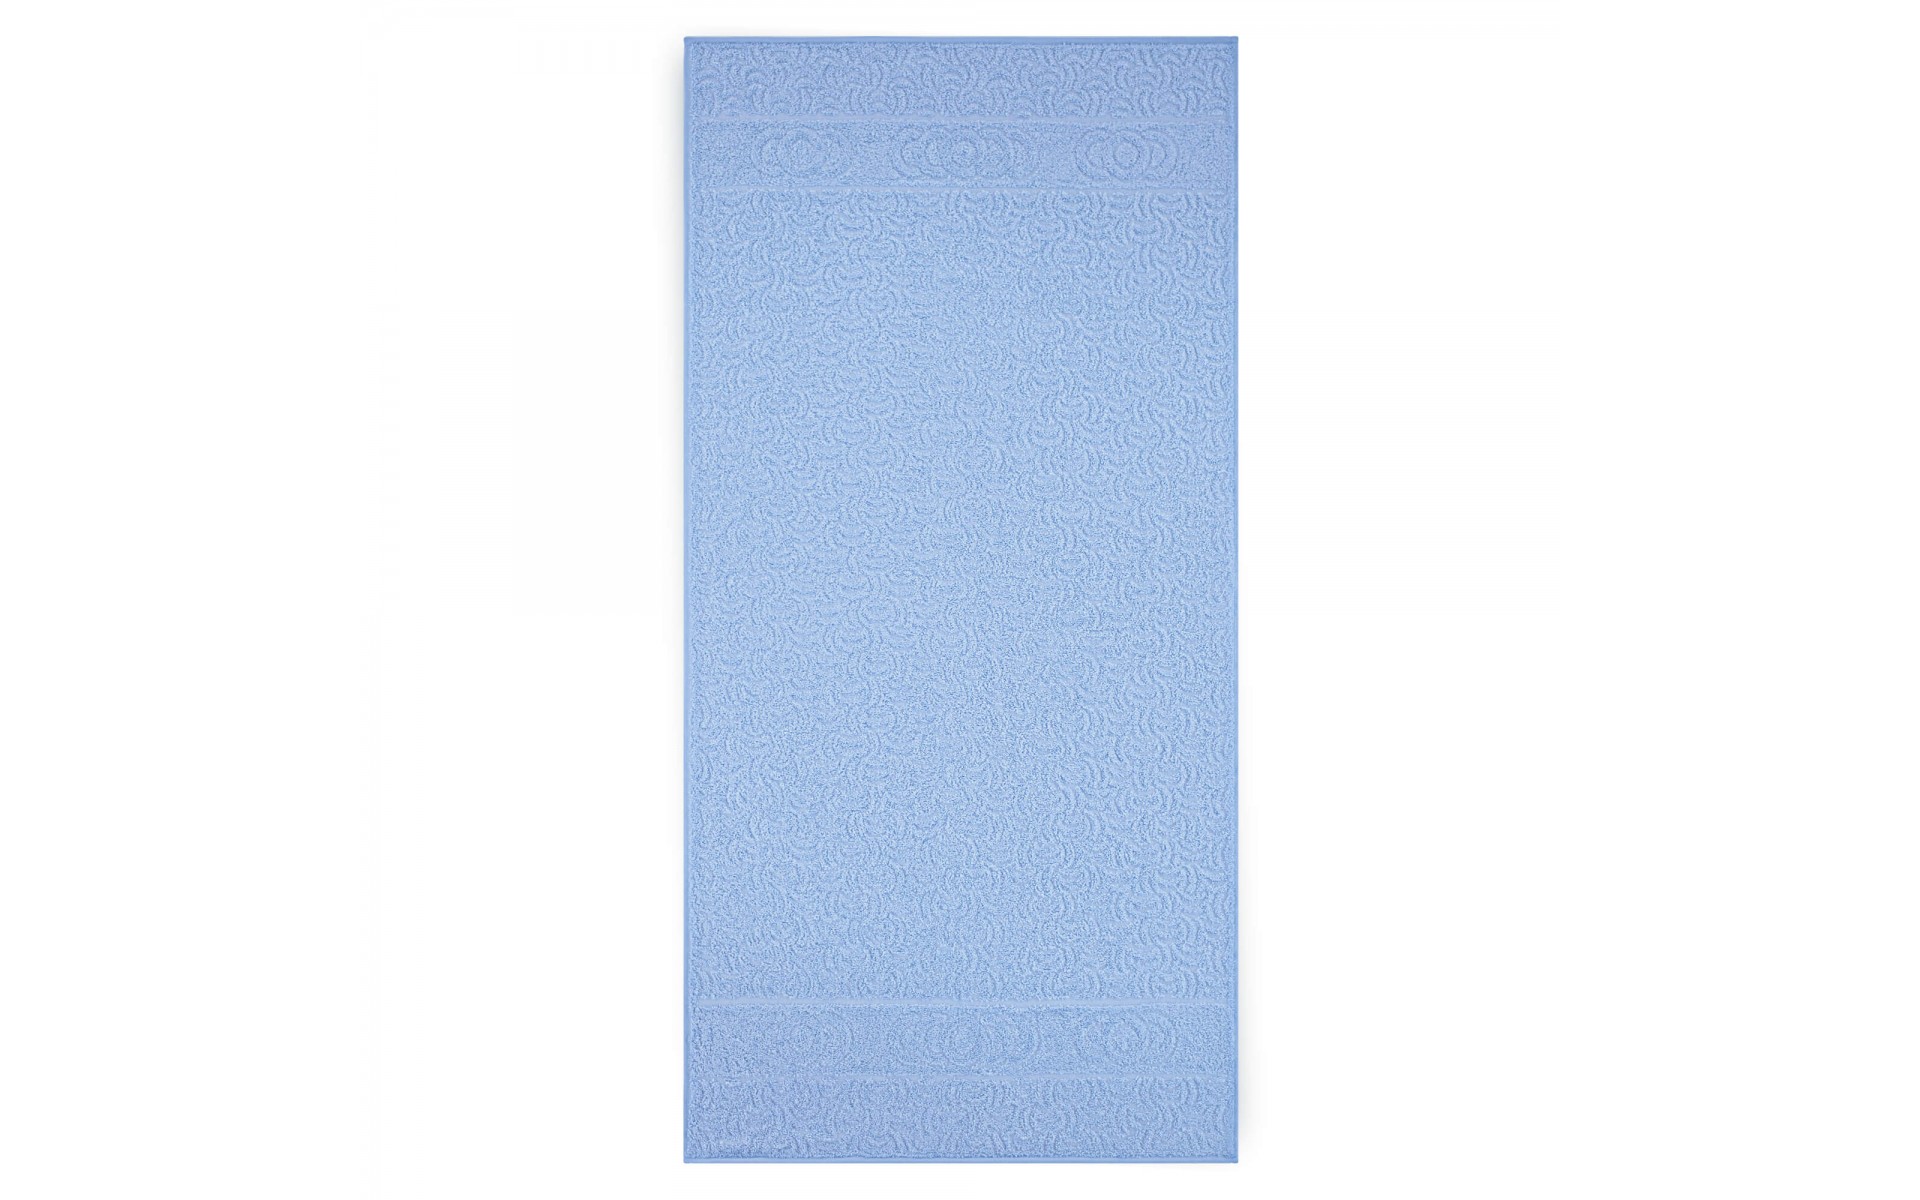 ręcznik MORWA niebieski - 7104